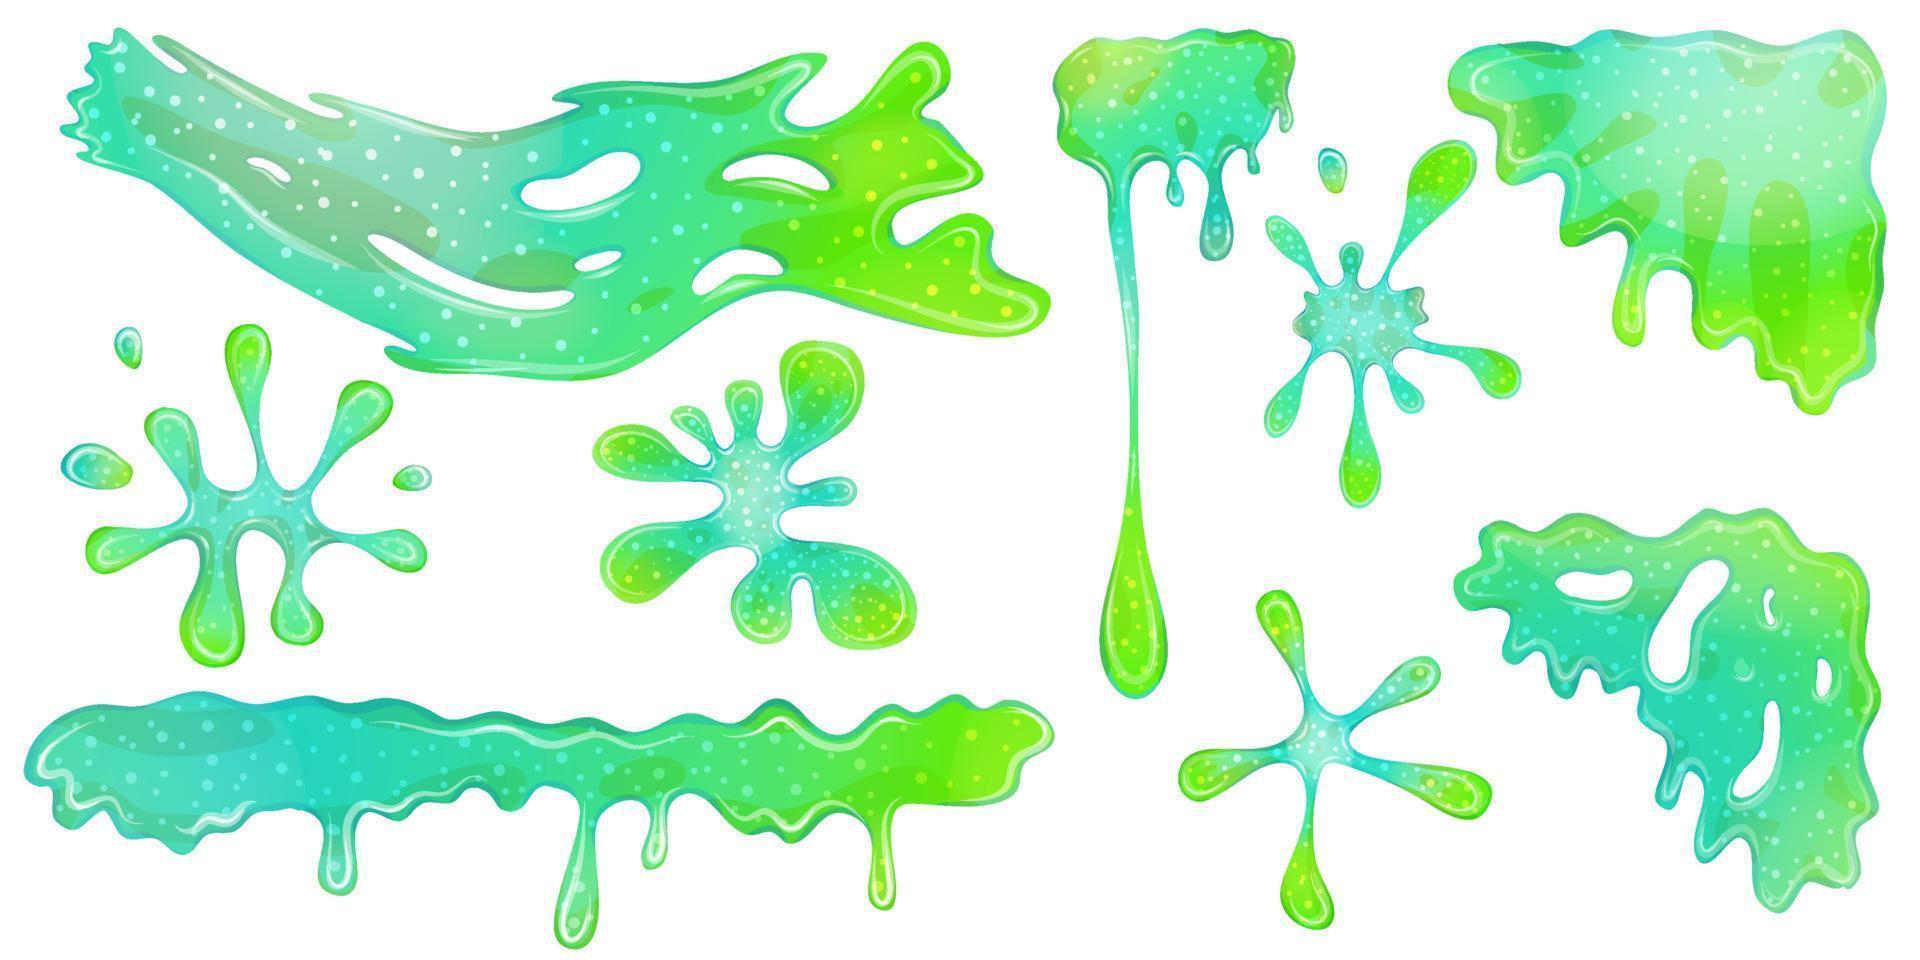 goteando limos goo verdes aislados en el conjunto. los limos son esquina y salpicadura, flujo de mucosidad. gelatina verde de colores para jugar. ilustración vectorial de dibujos animados. vector